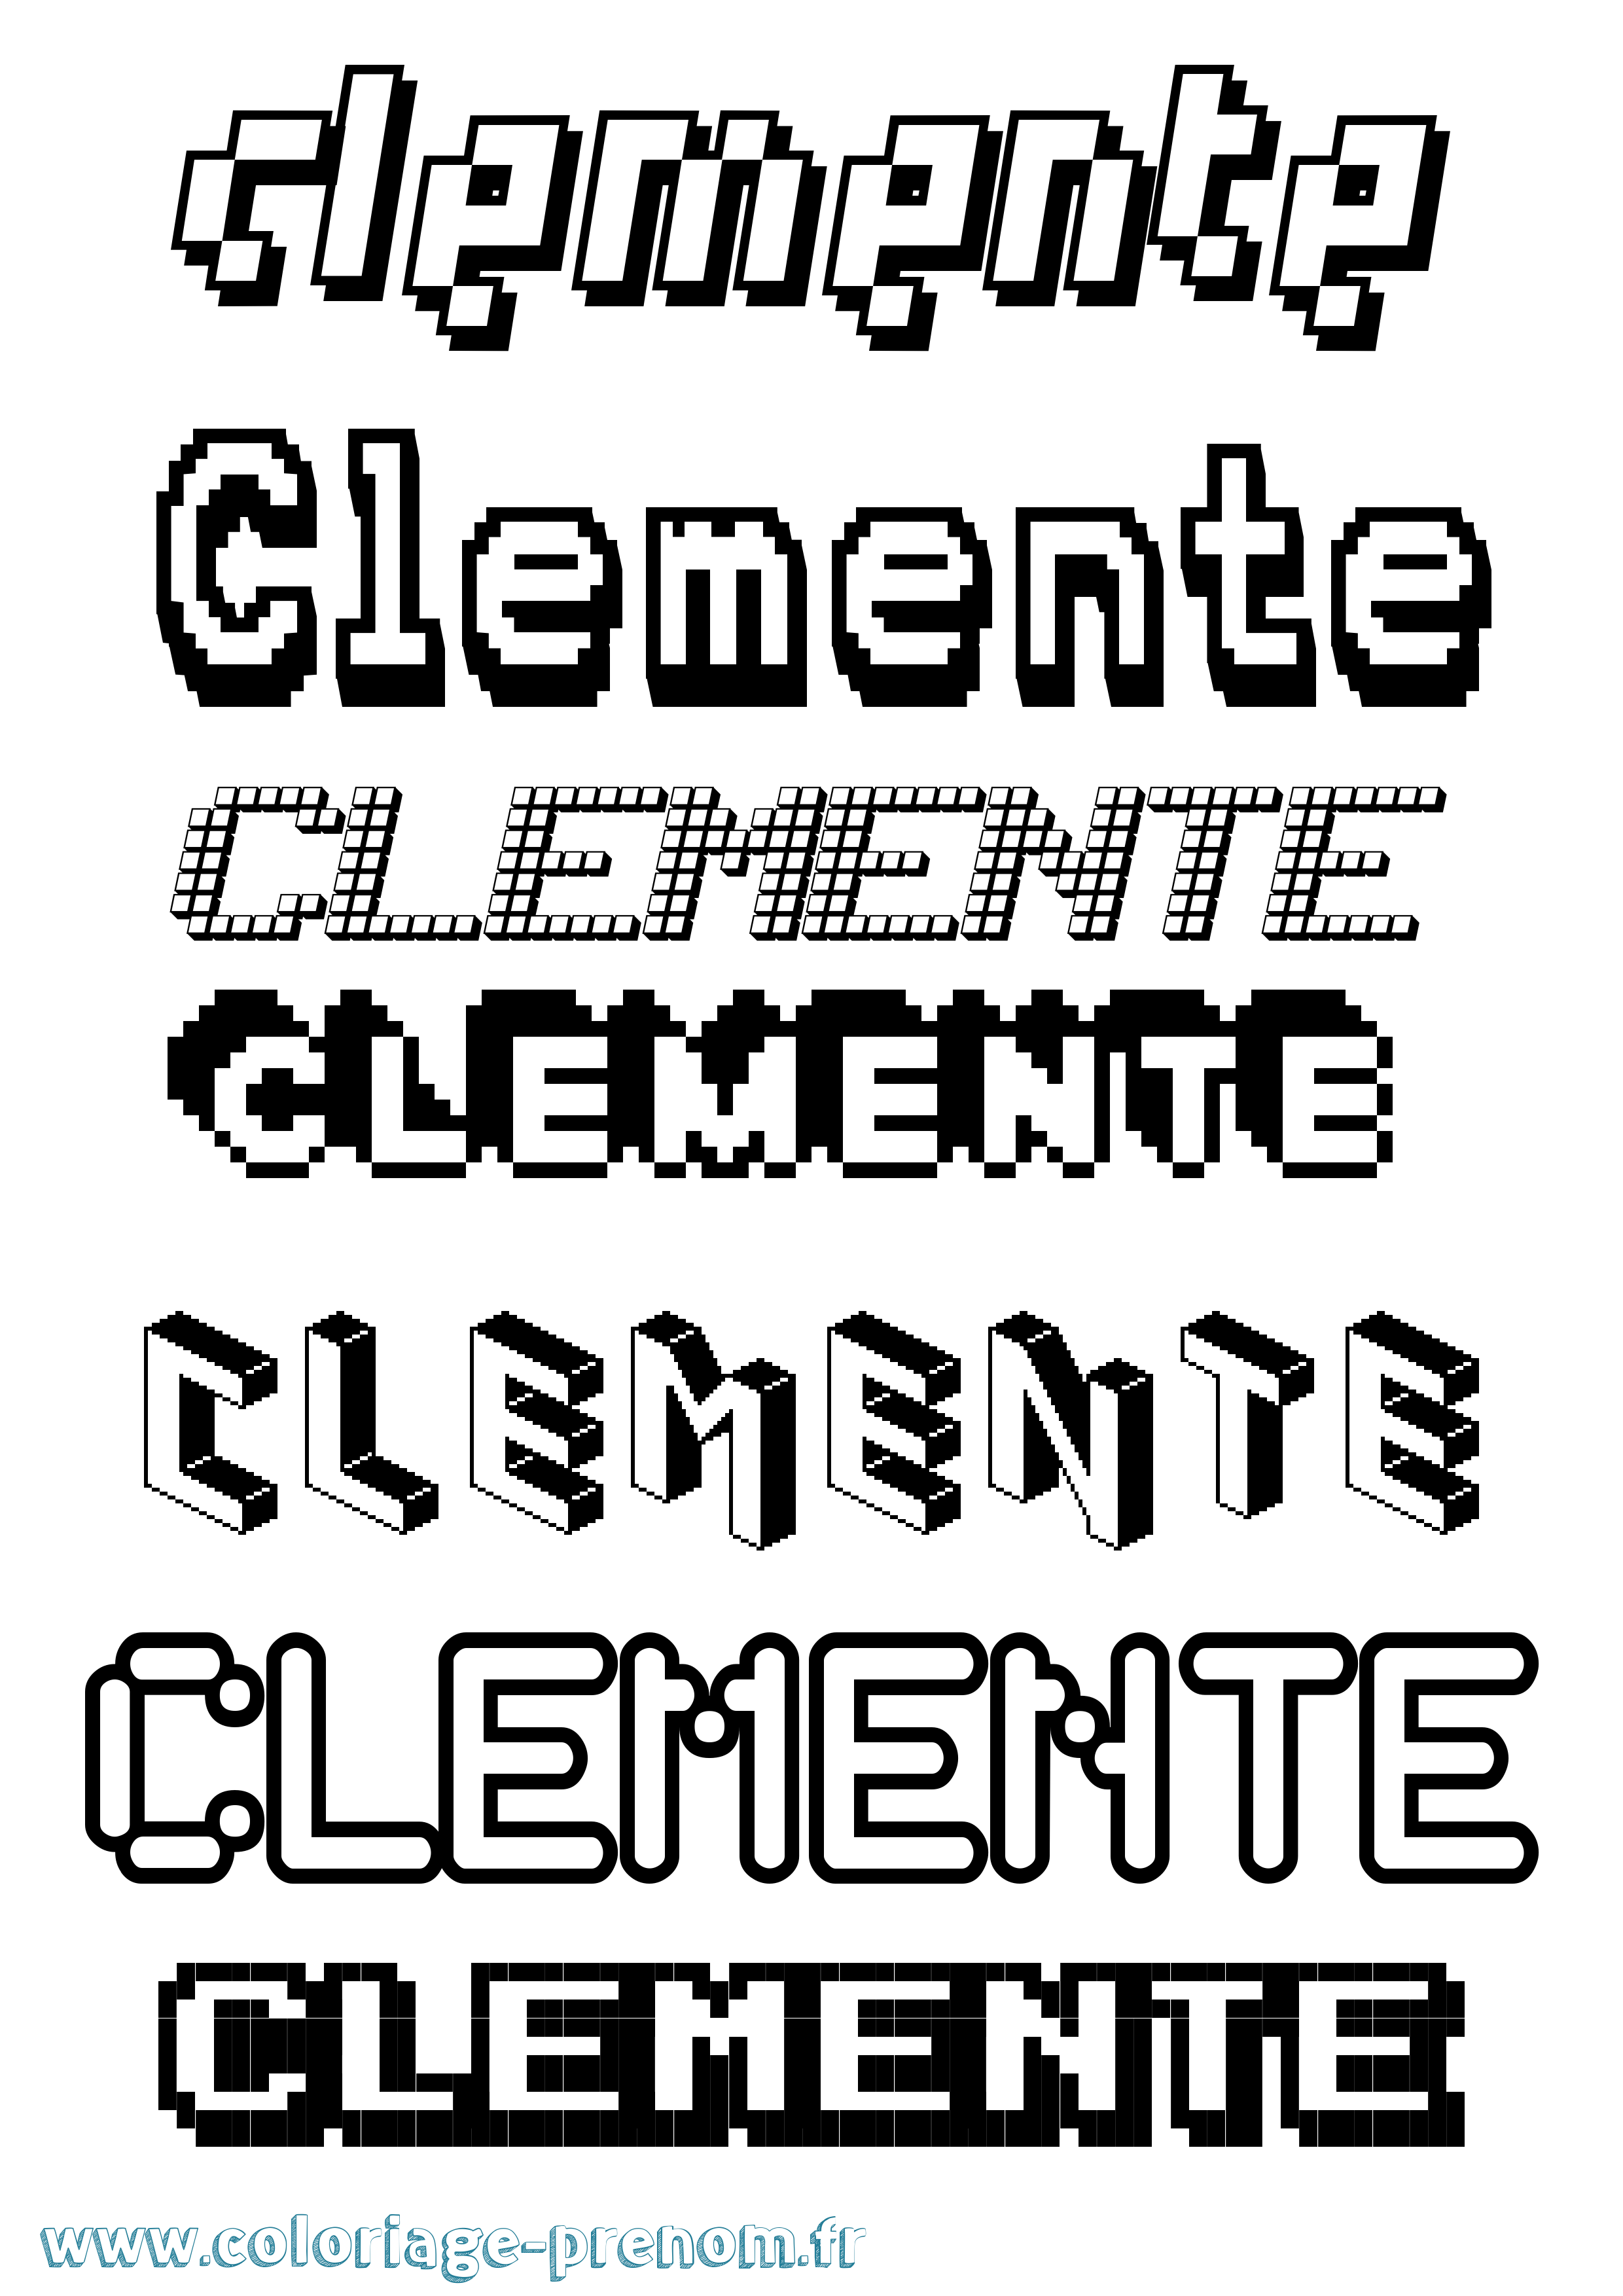 Coloriage prénom Clemente Pixel